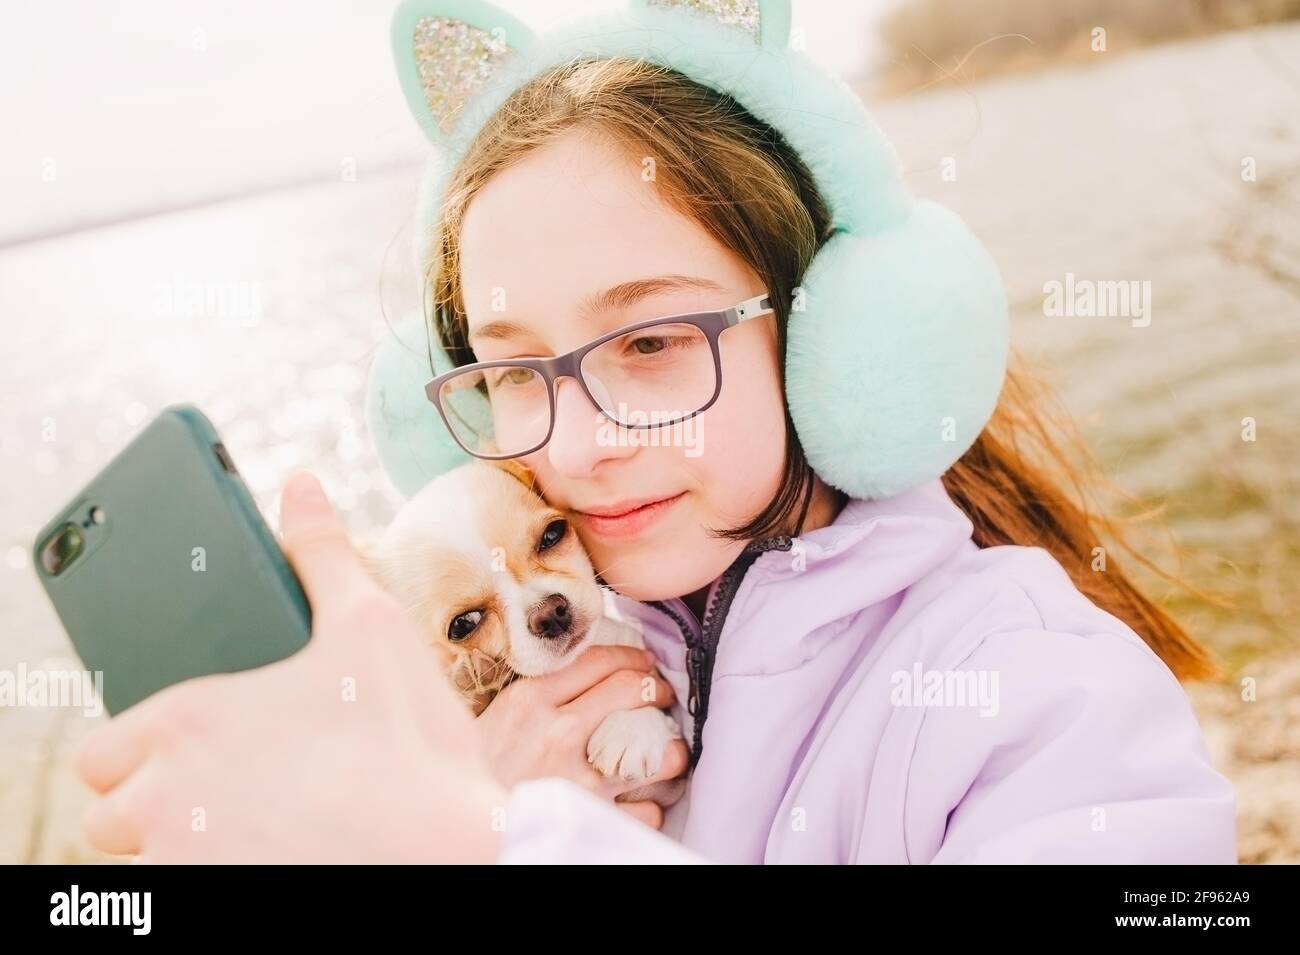 Fille fait selfie sur smartphone. Portrait d'une jeune fille heureuse avec son petit chien chihuahua. Une fille sur le fond de la nature embrasse son chien Chihuahua en vêtements. Banque D'Images